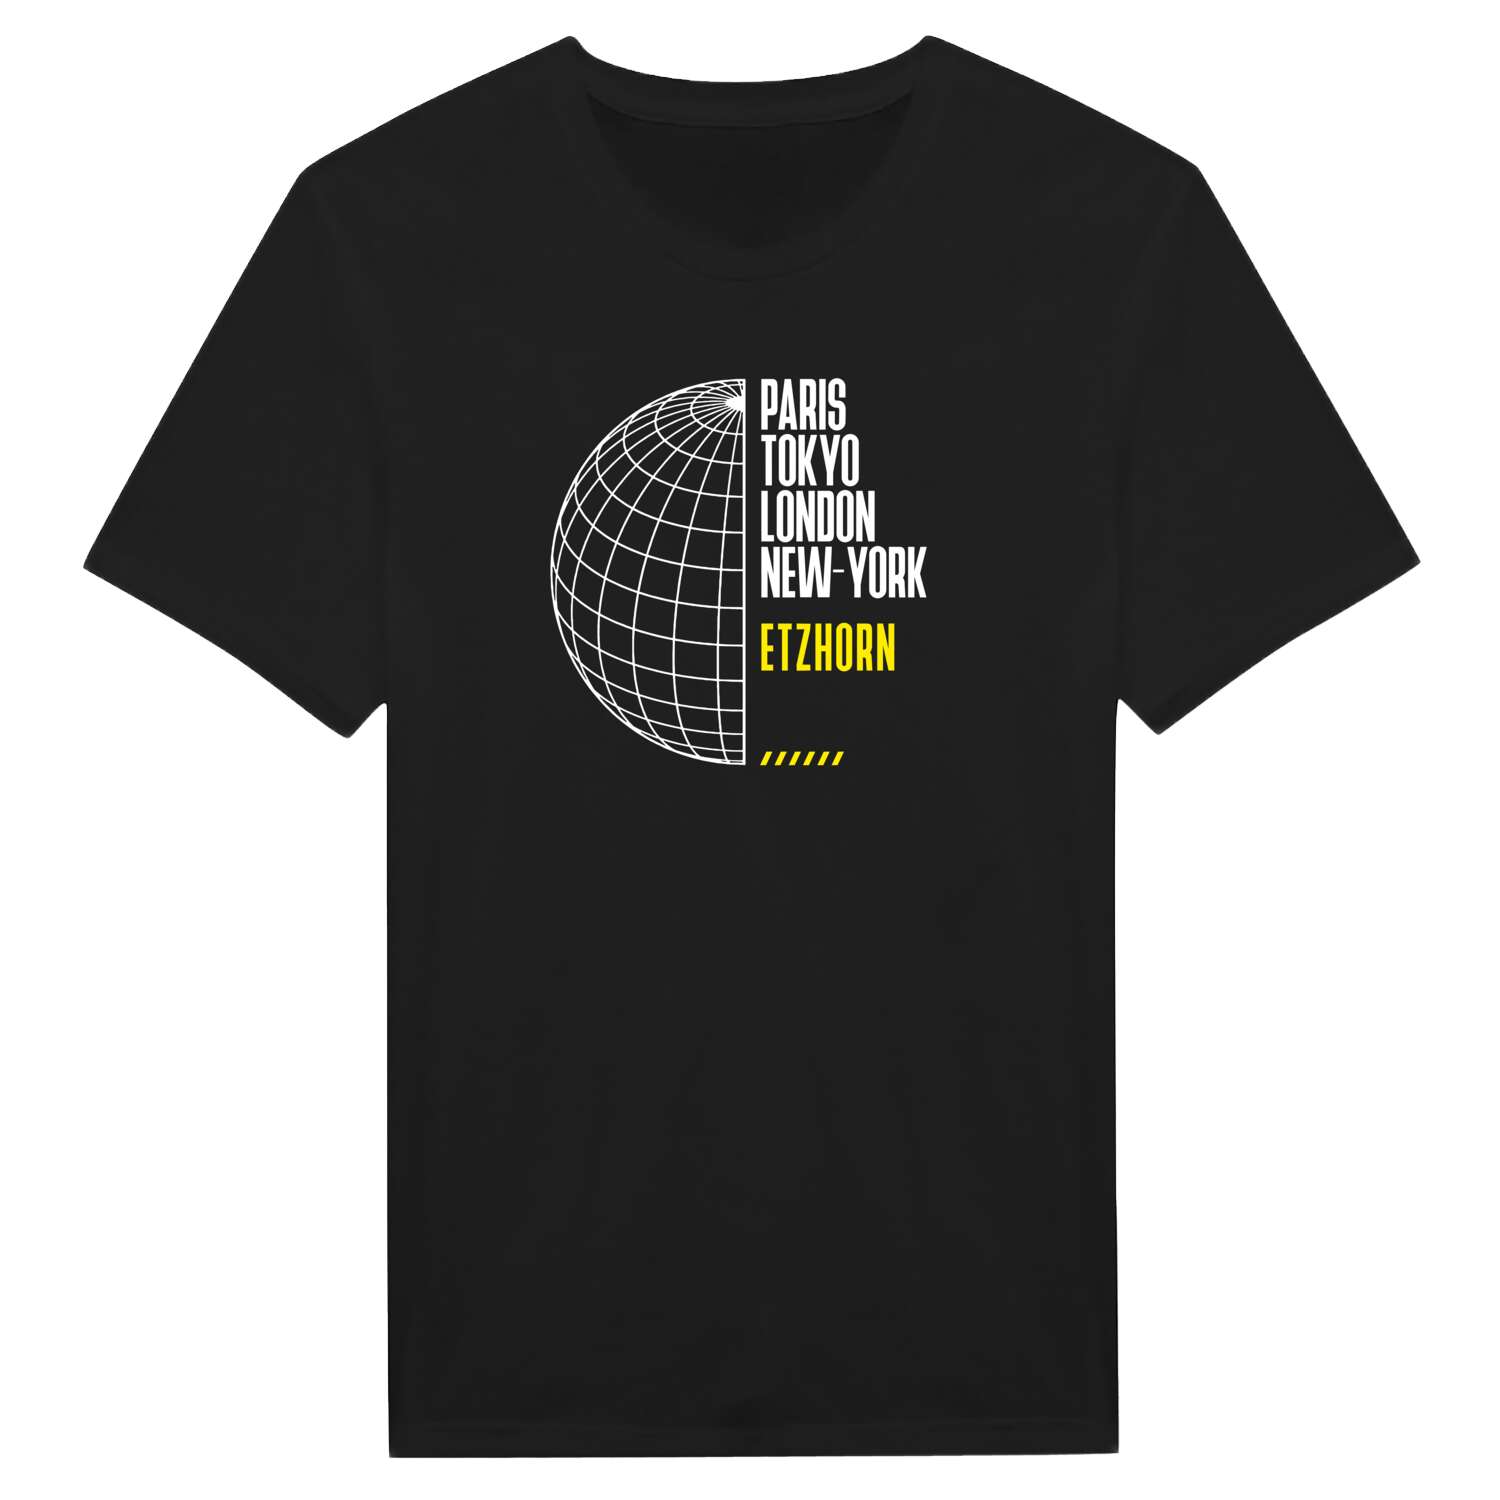 Etzhorn T-Shirt »Paris Tokyo London«